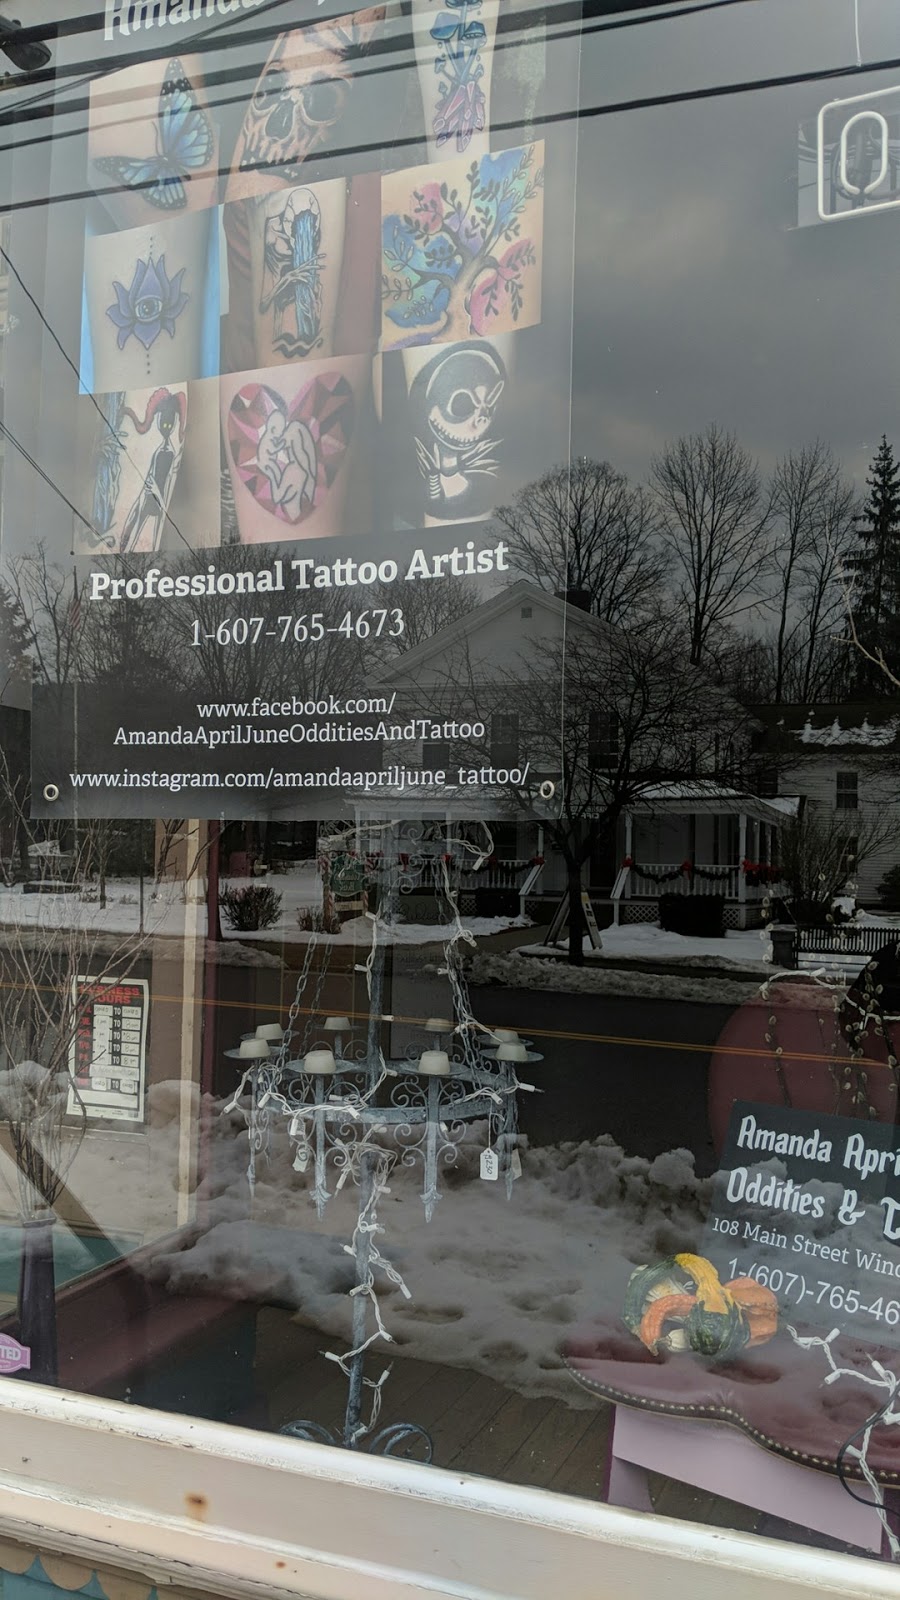 Amanda April June Oddities & Tattoo Parlor | 108 Main St, Windsor, NY 13865 | Phone: (607) 765-4673